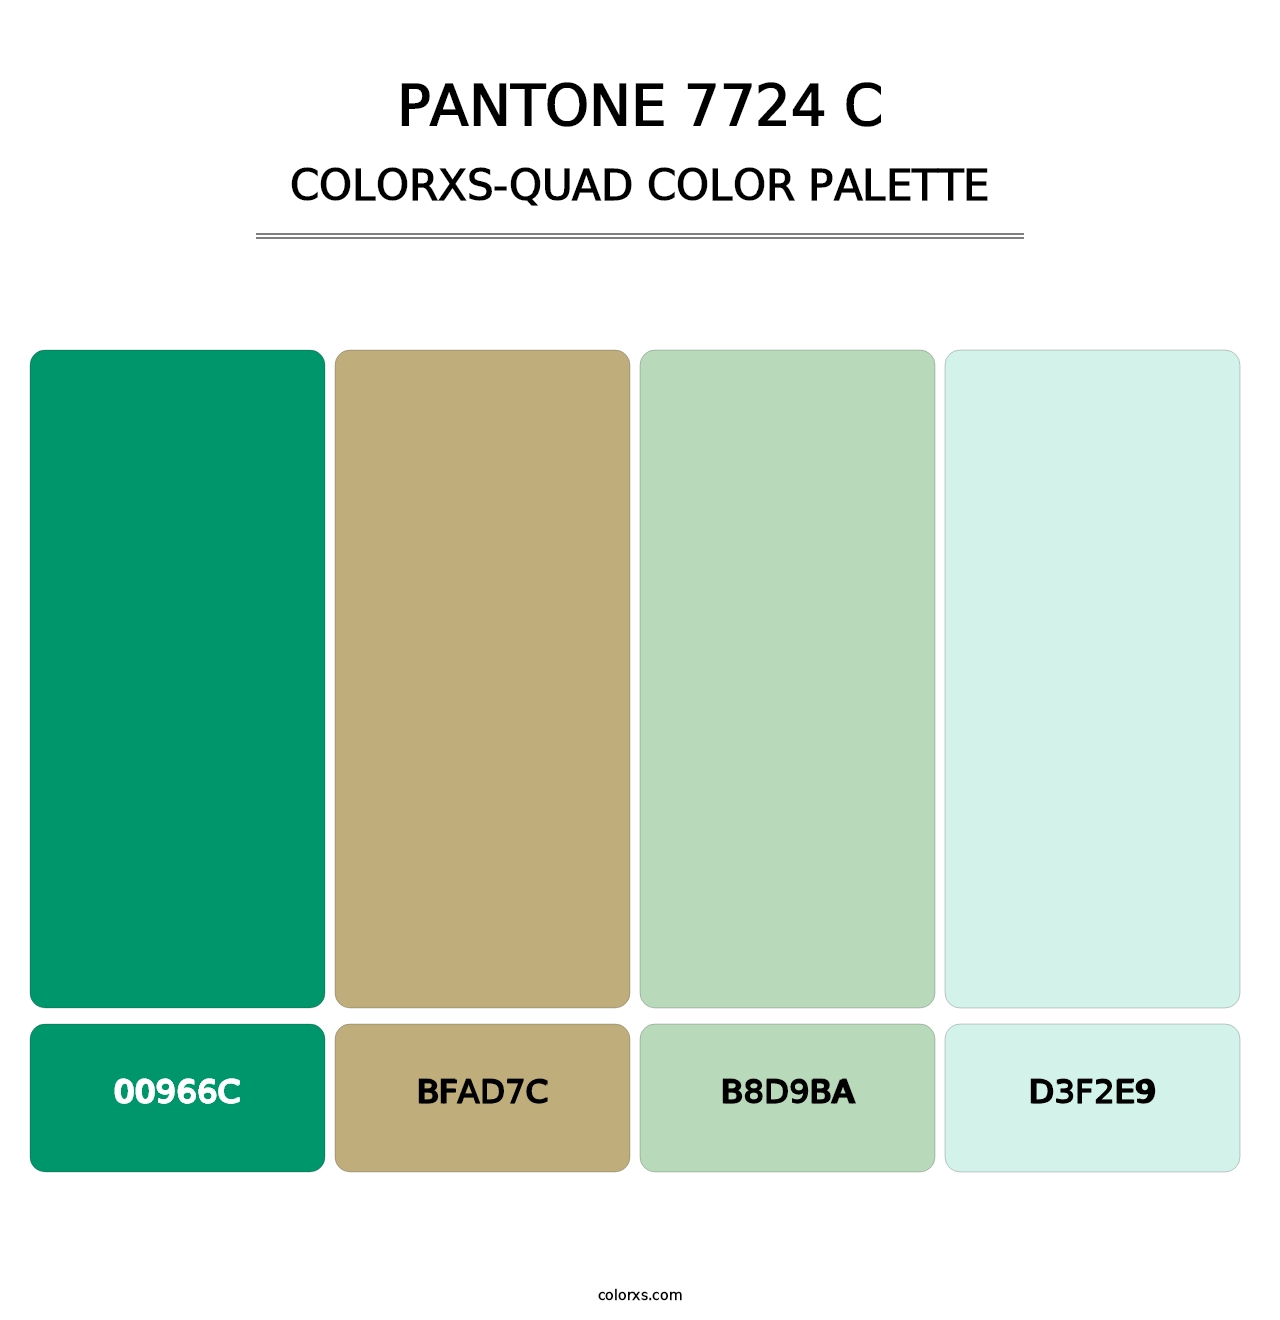 PANTONE 7724 C - Colorxs Quad Palette